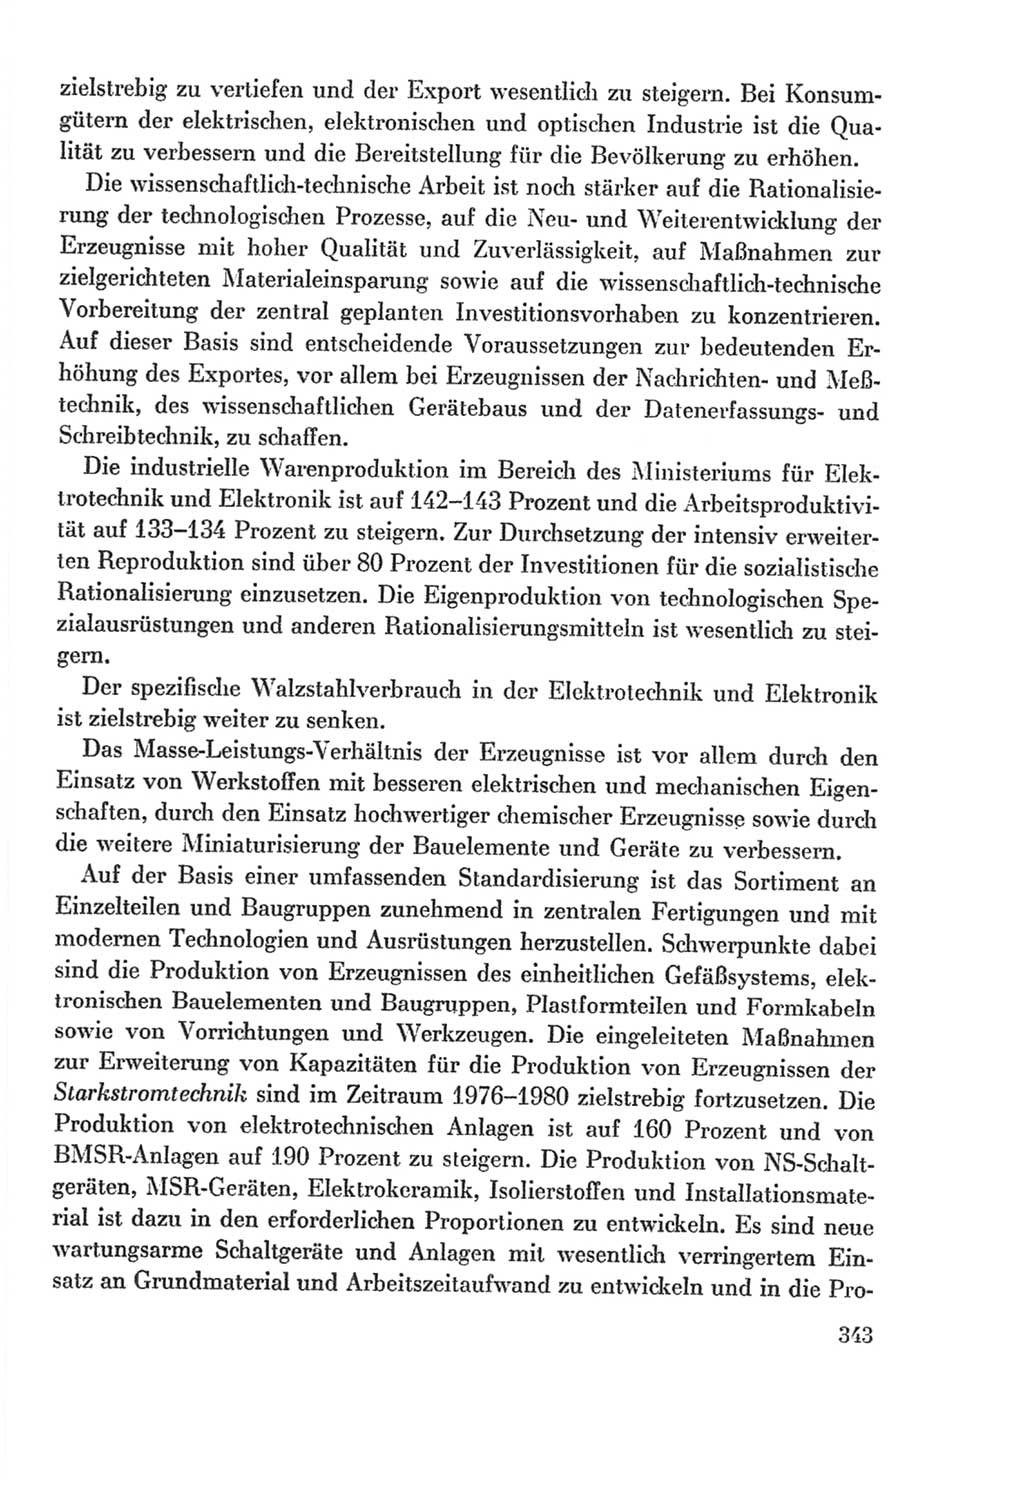 Protokoll der Verhandlungen des Ⅸ. Parteitages der Sozialistischen Einheitspartei Deutschlands (SED) [Deutsche Demokratische Republik (DDR)] 1976, Band 2, Seite 343 (Prot. Verh. Ⅸ. PT SED DDR 1976, Bd. 2, S. 343)